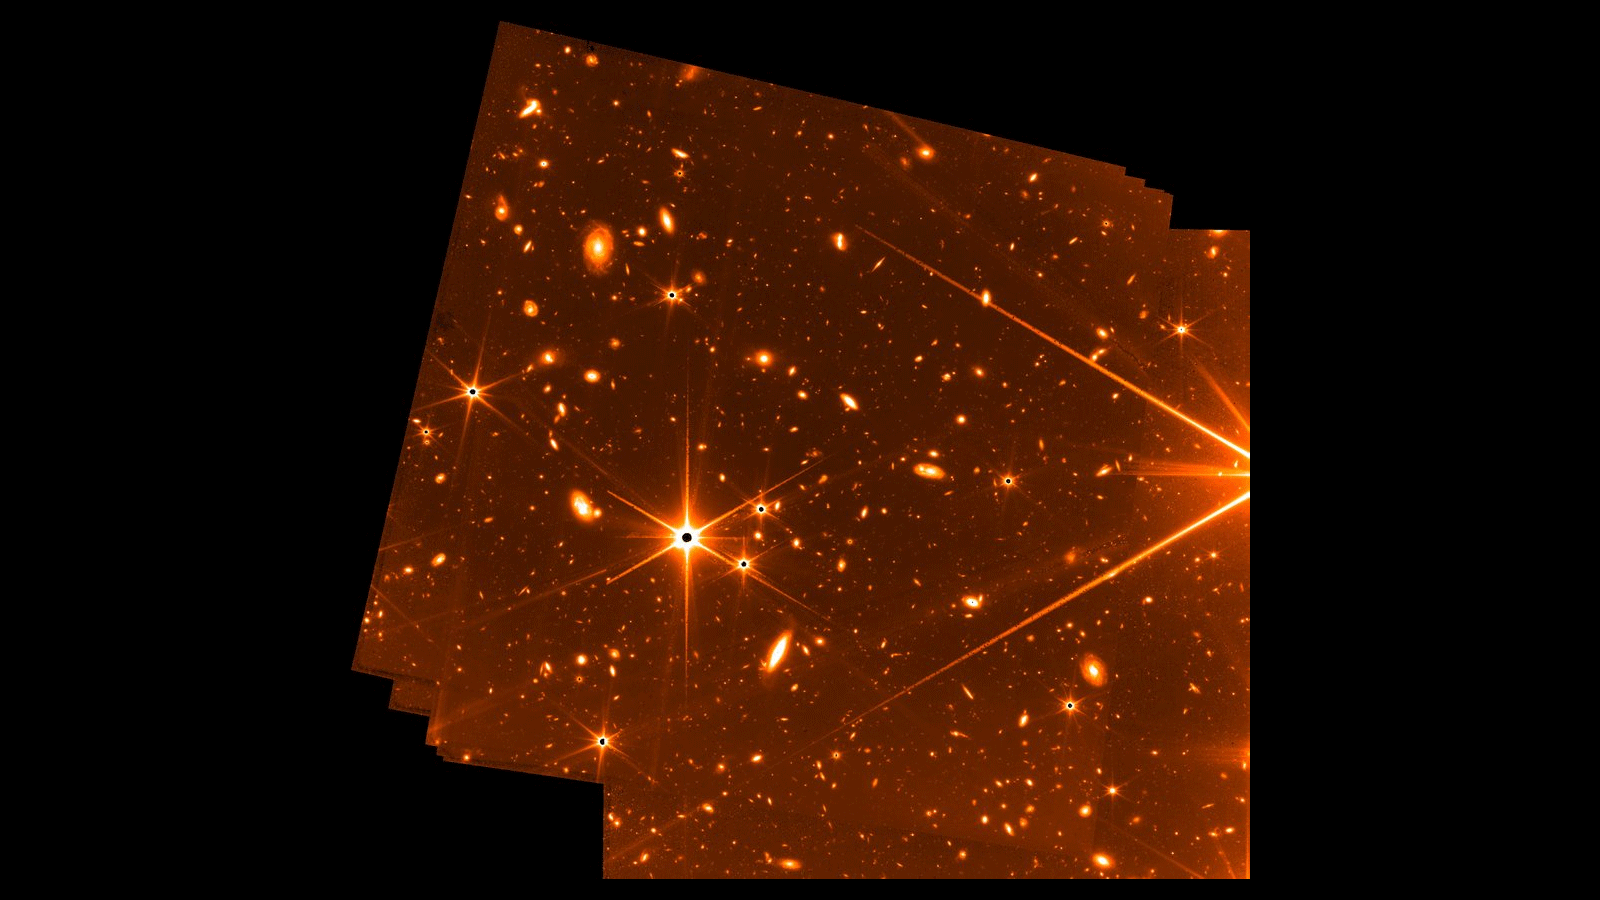 ناسا تكشف محتوى الصور الأولى لتلسكوب جيمس ويب